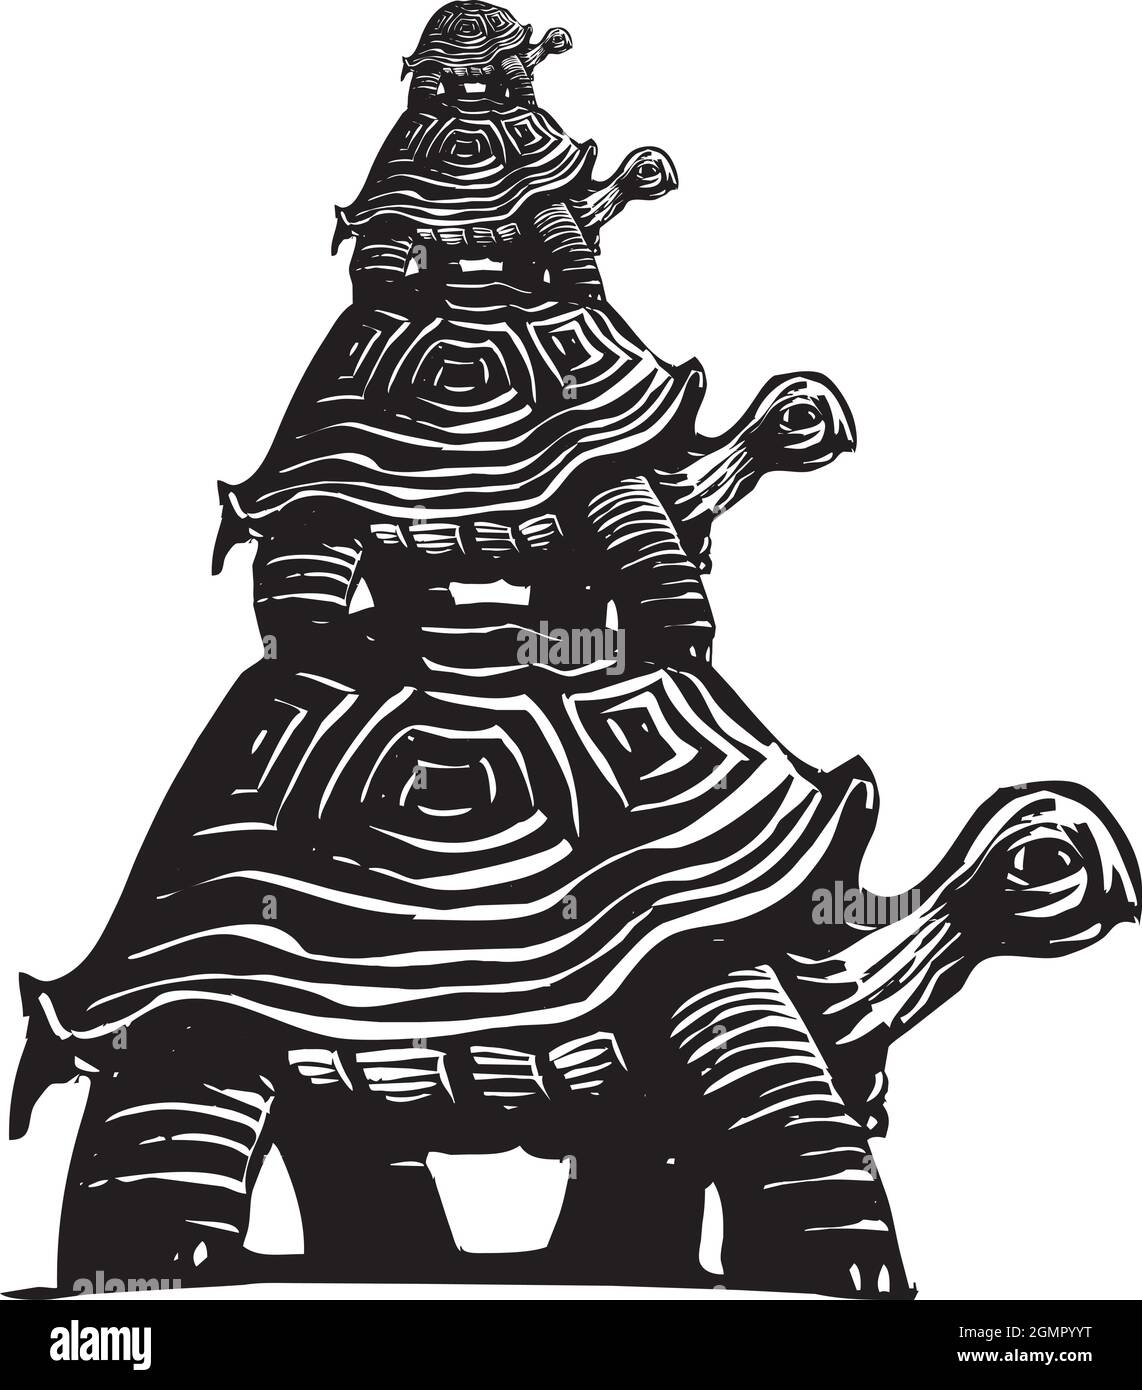 Ilustración de estilo expresionista tallado en madera de tortugas apiladas unas sobre otras Ilustración del Vector